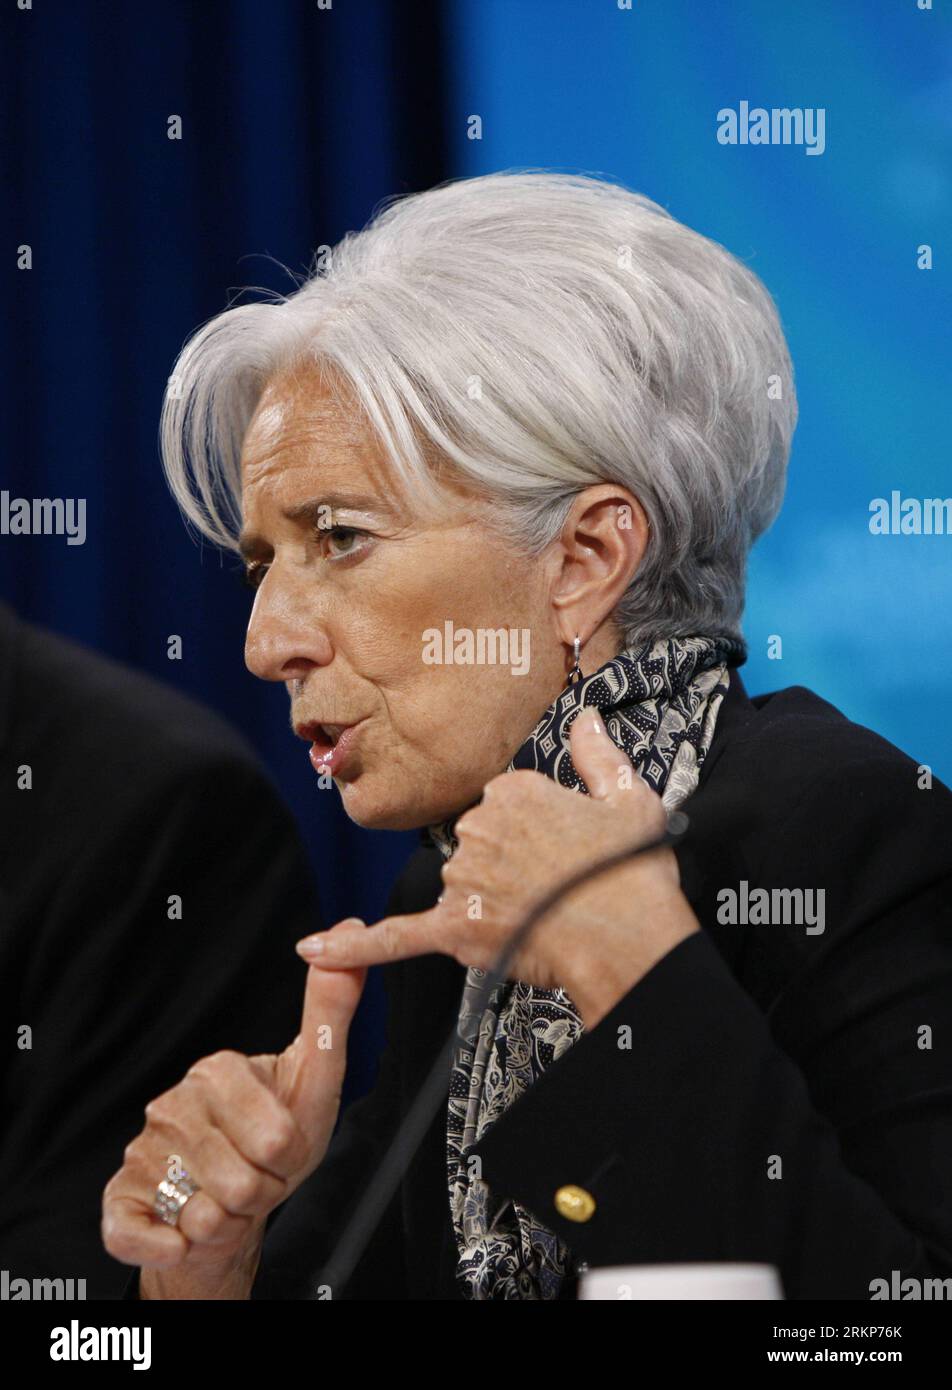 Bildnummer: 57917877 Datum: 20.04.2012 Copyright: imago/Xinhua (120421) -- WASHINGTON, aprile 21,2012 (Xinhua) -- Christine Lagarde, capo del Fondo monetario Internazionale (FMI), parla durante una conferenza stampa a Washington, negli Stati Uniti, il 20 aprile 2012. Le principali economie industriali ed emergenti del G20 hanno accettato di potenziare la capacità creditizia del FMI con impegni che aumenterebbero le risorse dell'istituzione di oltre 430 miliardi di dollari, una mossa che quasi raddoppierà il potere creditizio totale del FMI. (xinhua/Fang Zhe) US-WASHINGTON-FMI-G20-RISORSE EXTRA PUBLICAT Foto Stock